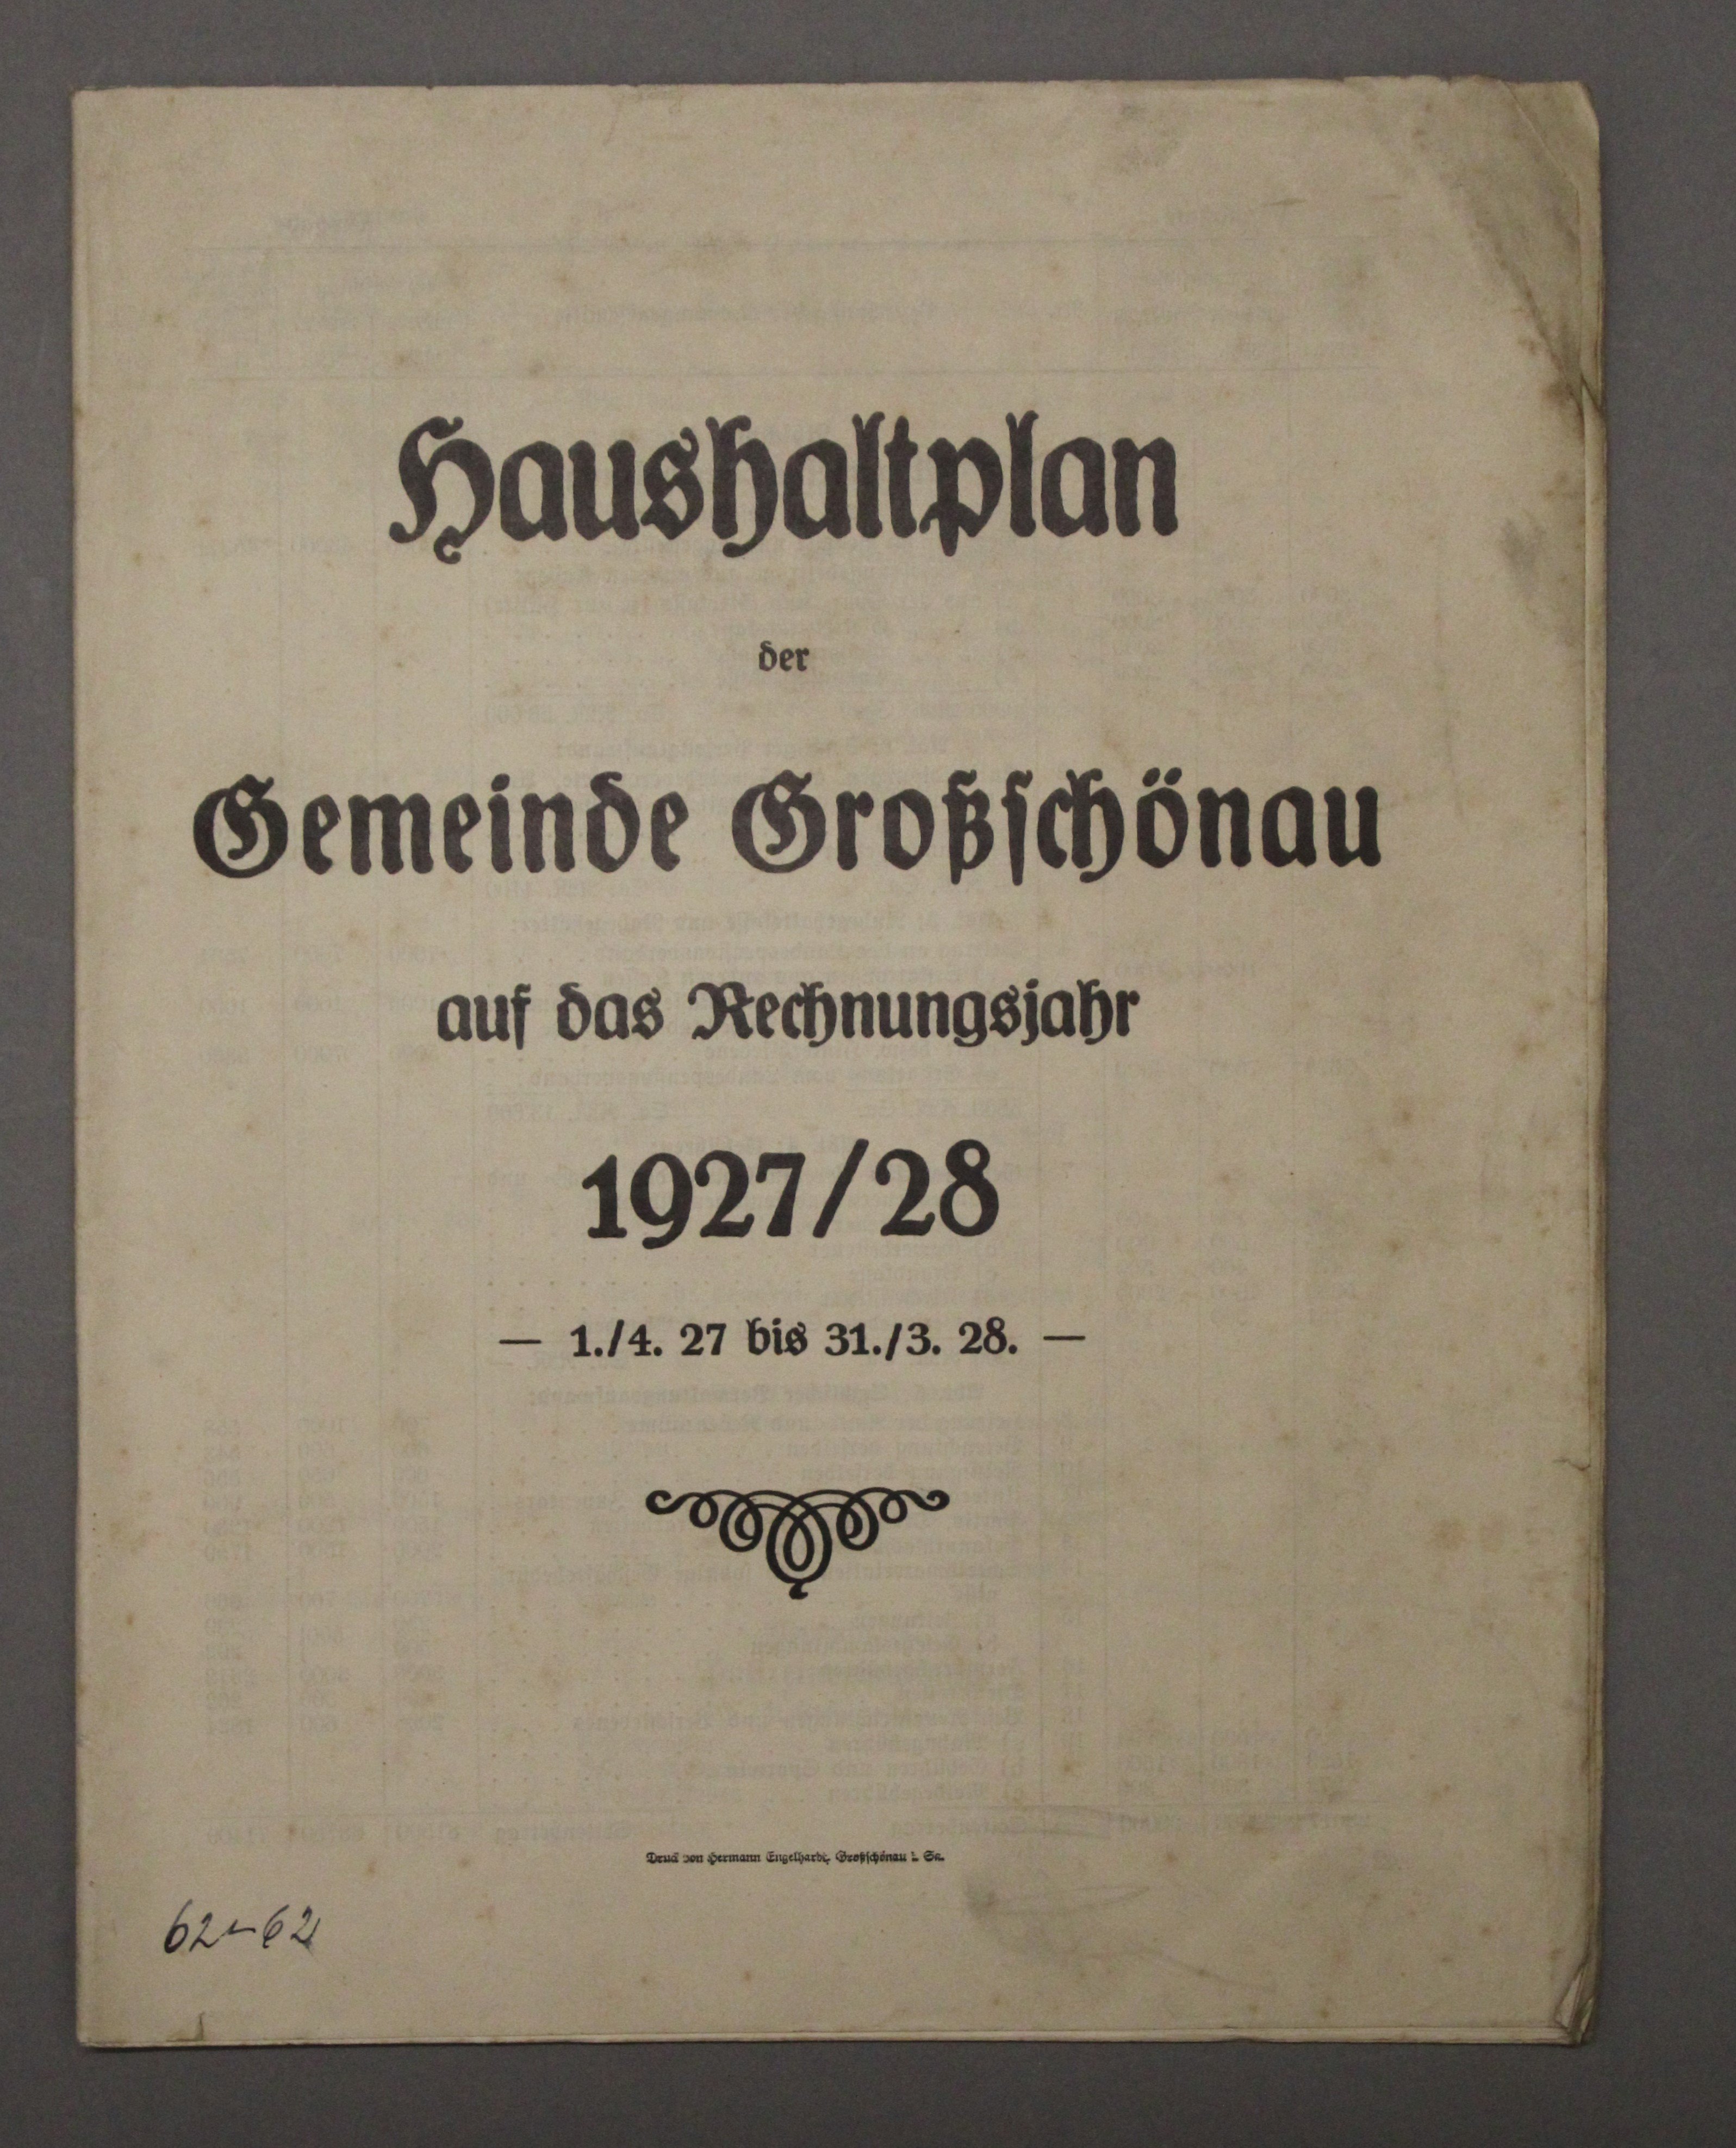 Haushaltplan 1927/28 (Deutsches Damast- und Frottiermuseum CC BY-NC-SA)